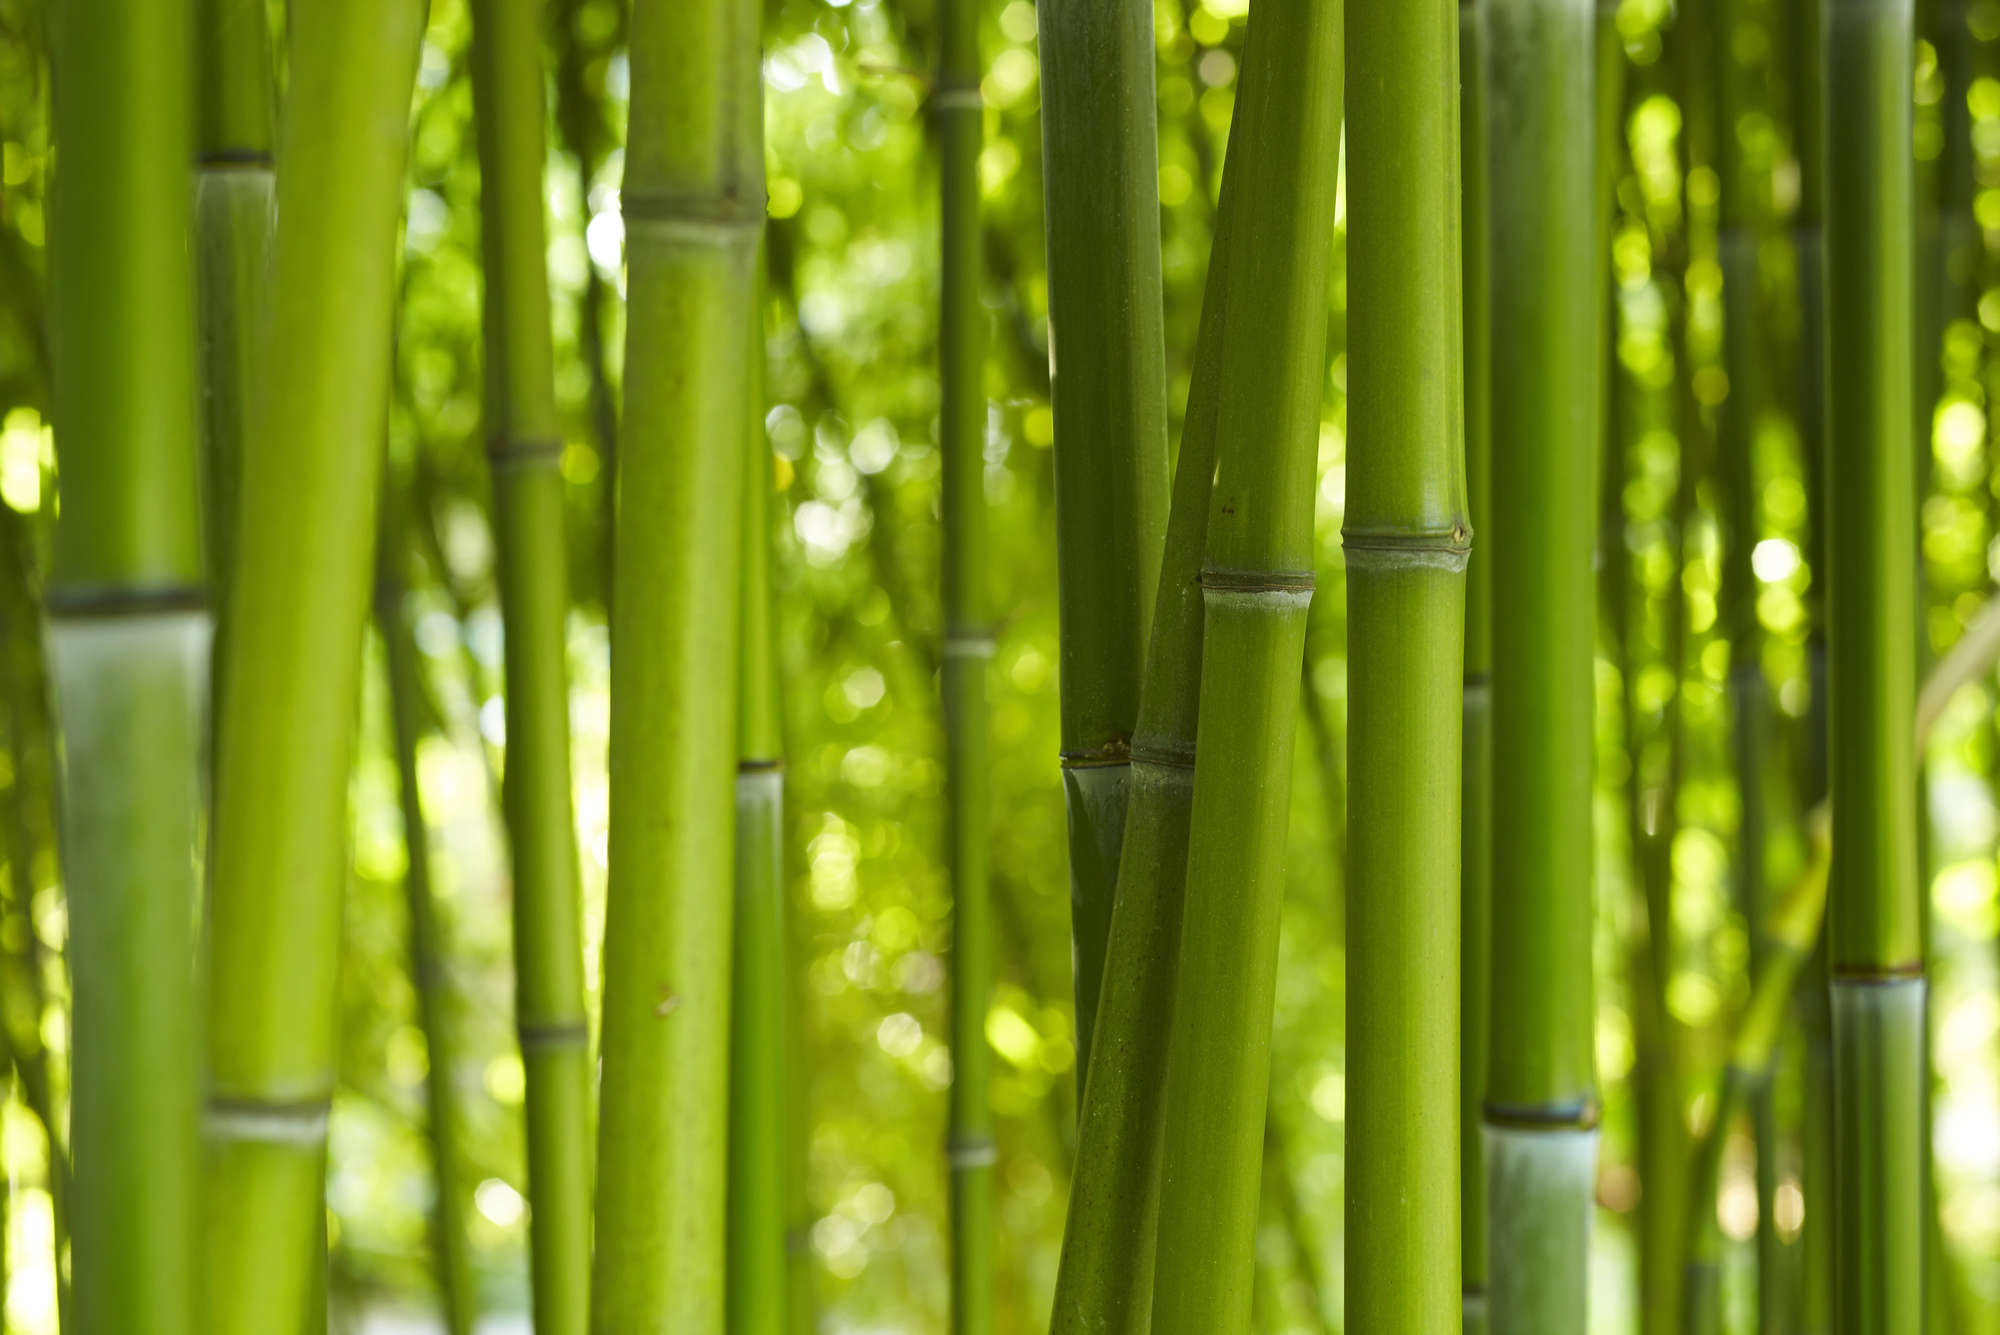             Fototapete Bambus in Grün – Strukturiertes Vlies
        